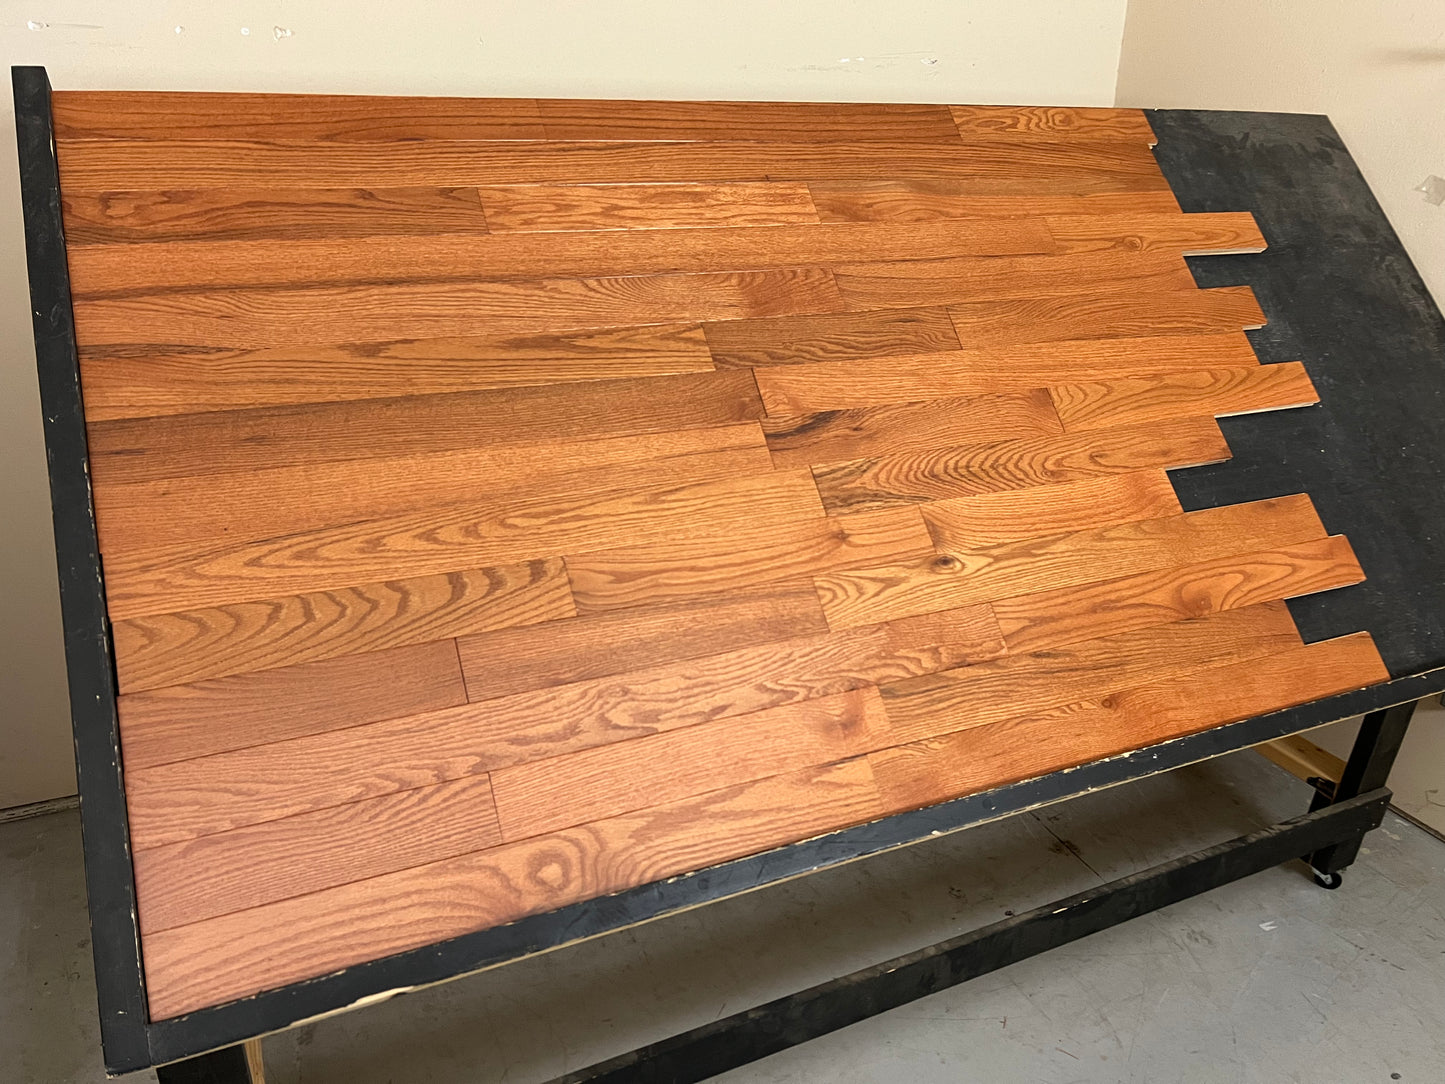 3 1/4" x 3/4" Solid Oak Butterscotch Hardwood Flooring